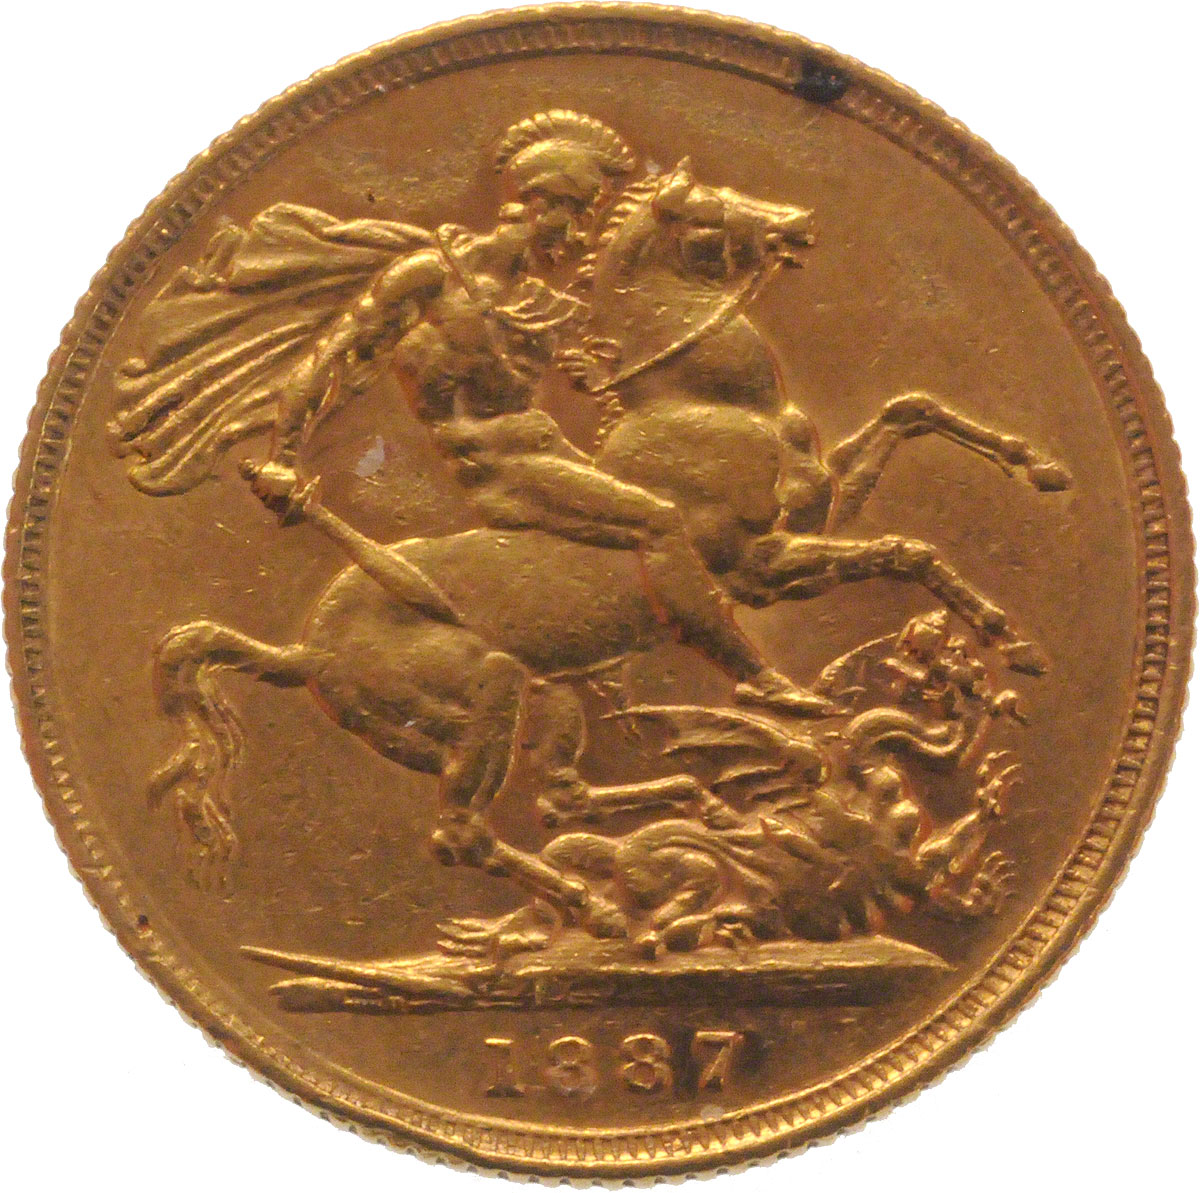 1887 Βικτώρια (Νομισματοκοπείο Σίδνεϊ)